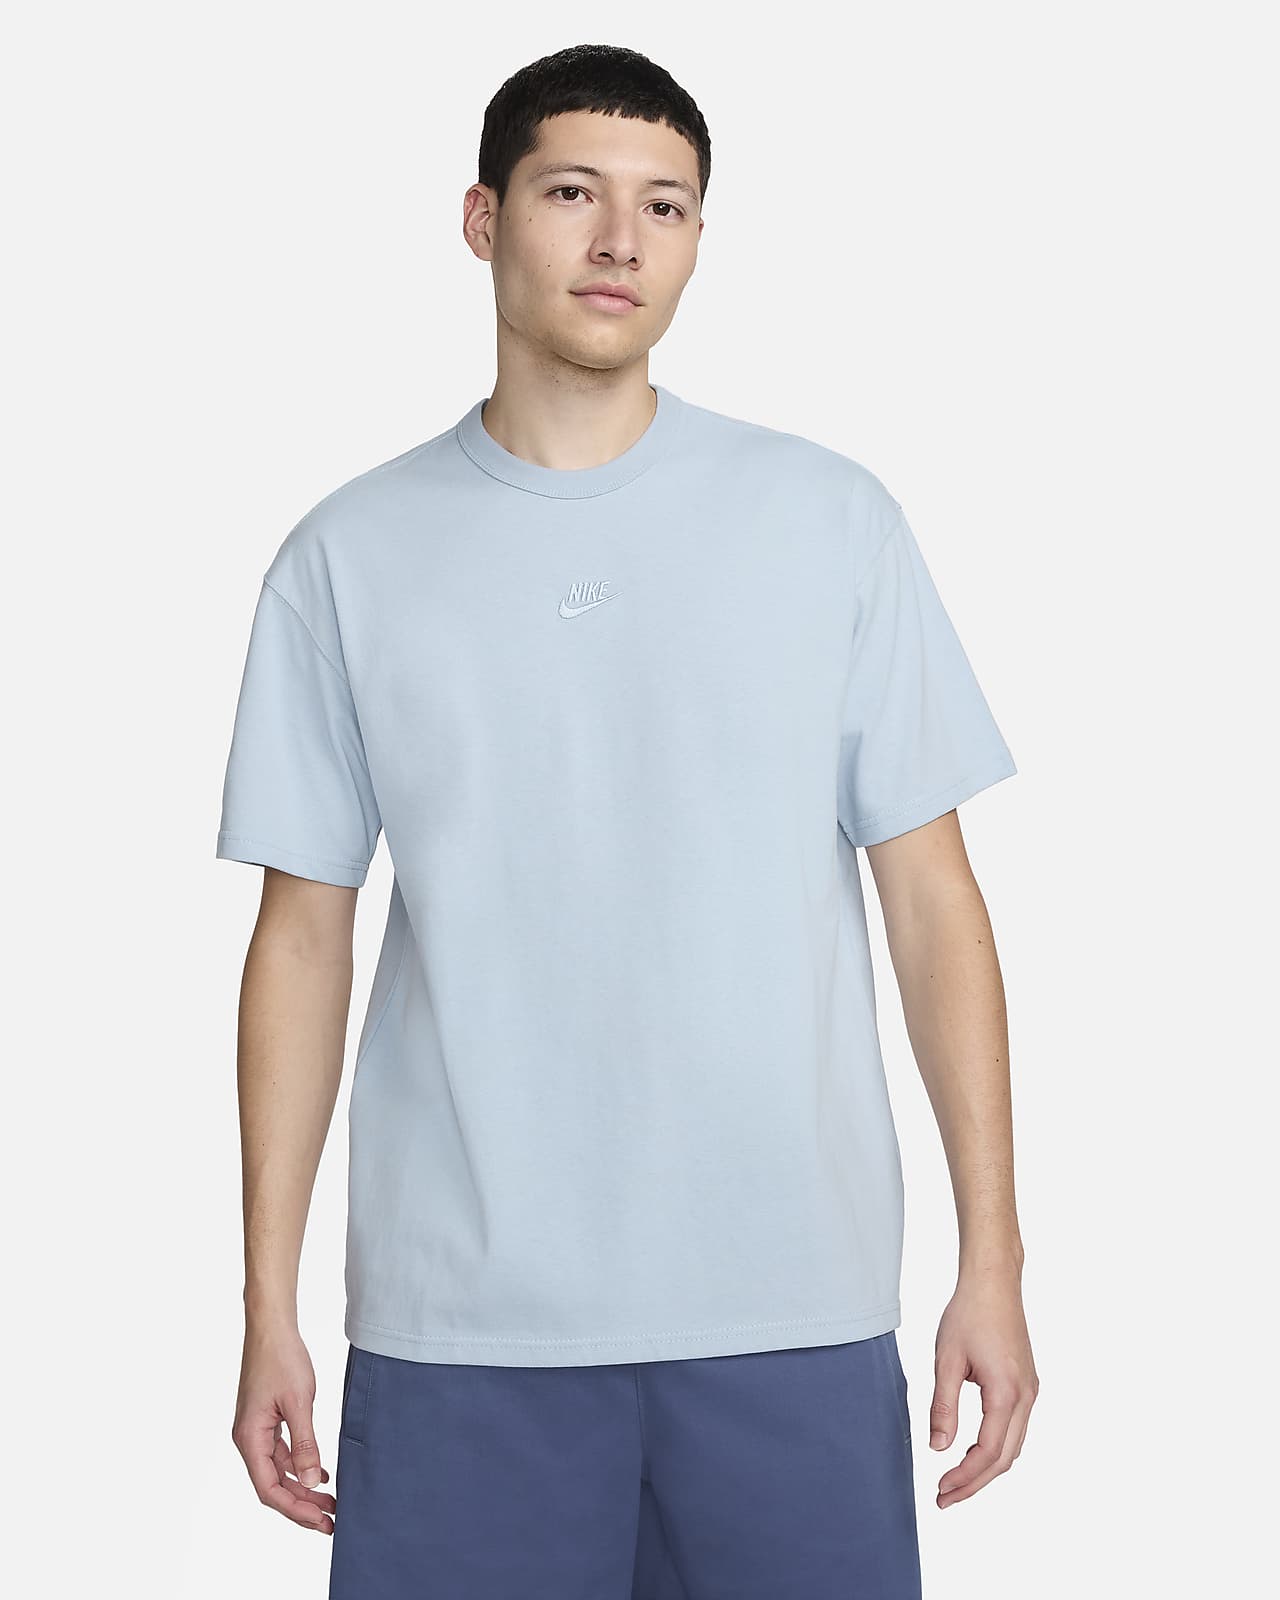 Nike Mens Dry Yoga T-Shirt - Blue